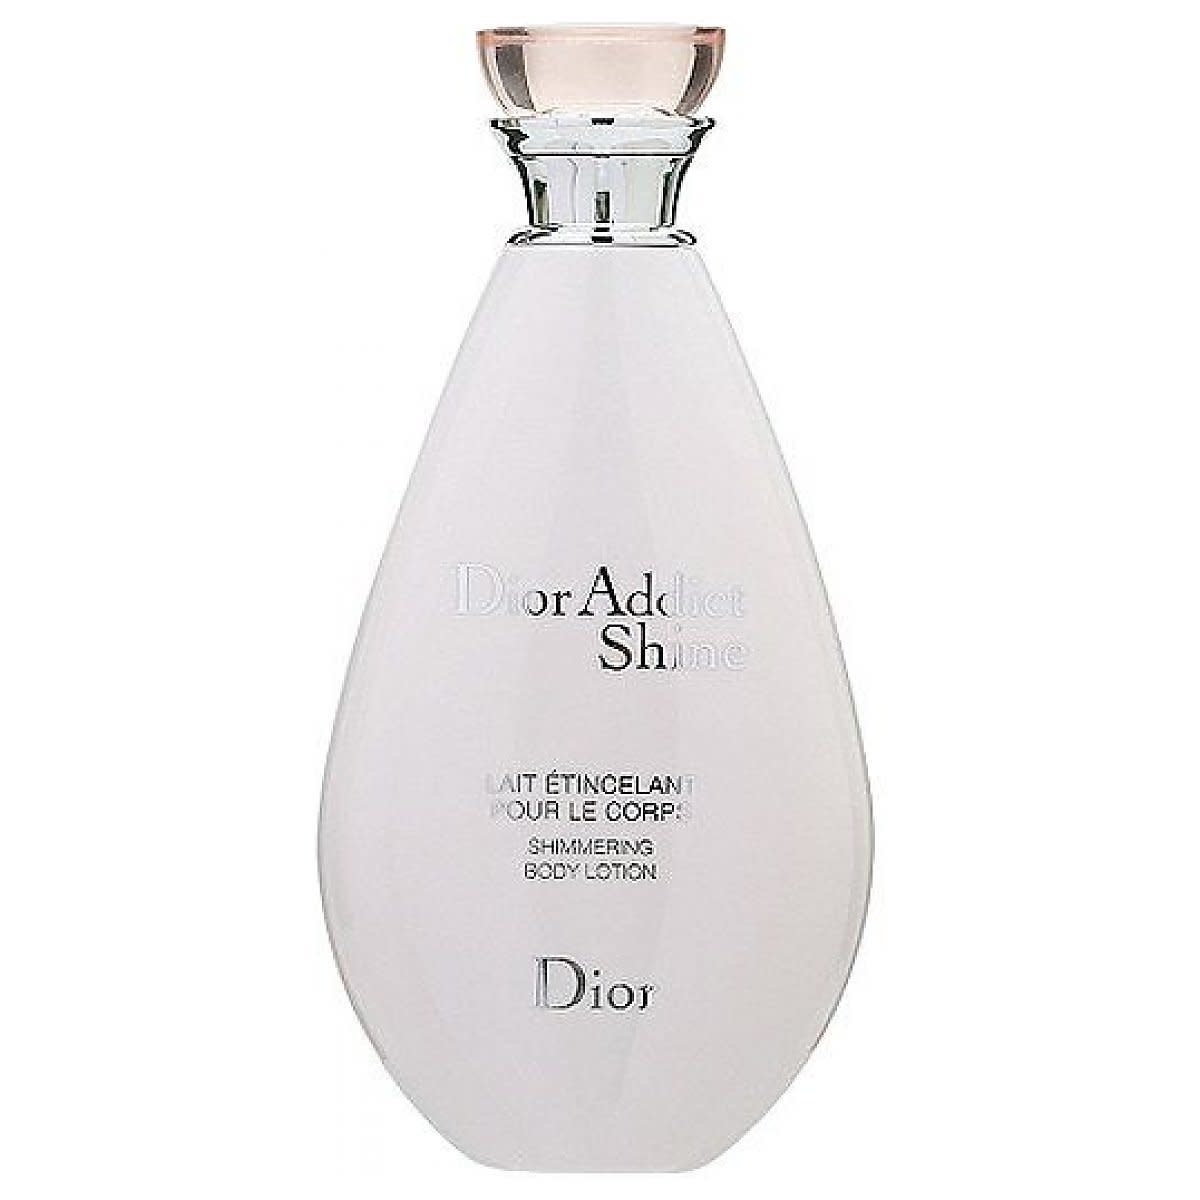 Jadore Body Lotion by DIOR  Buy online  parfumdreams